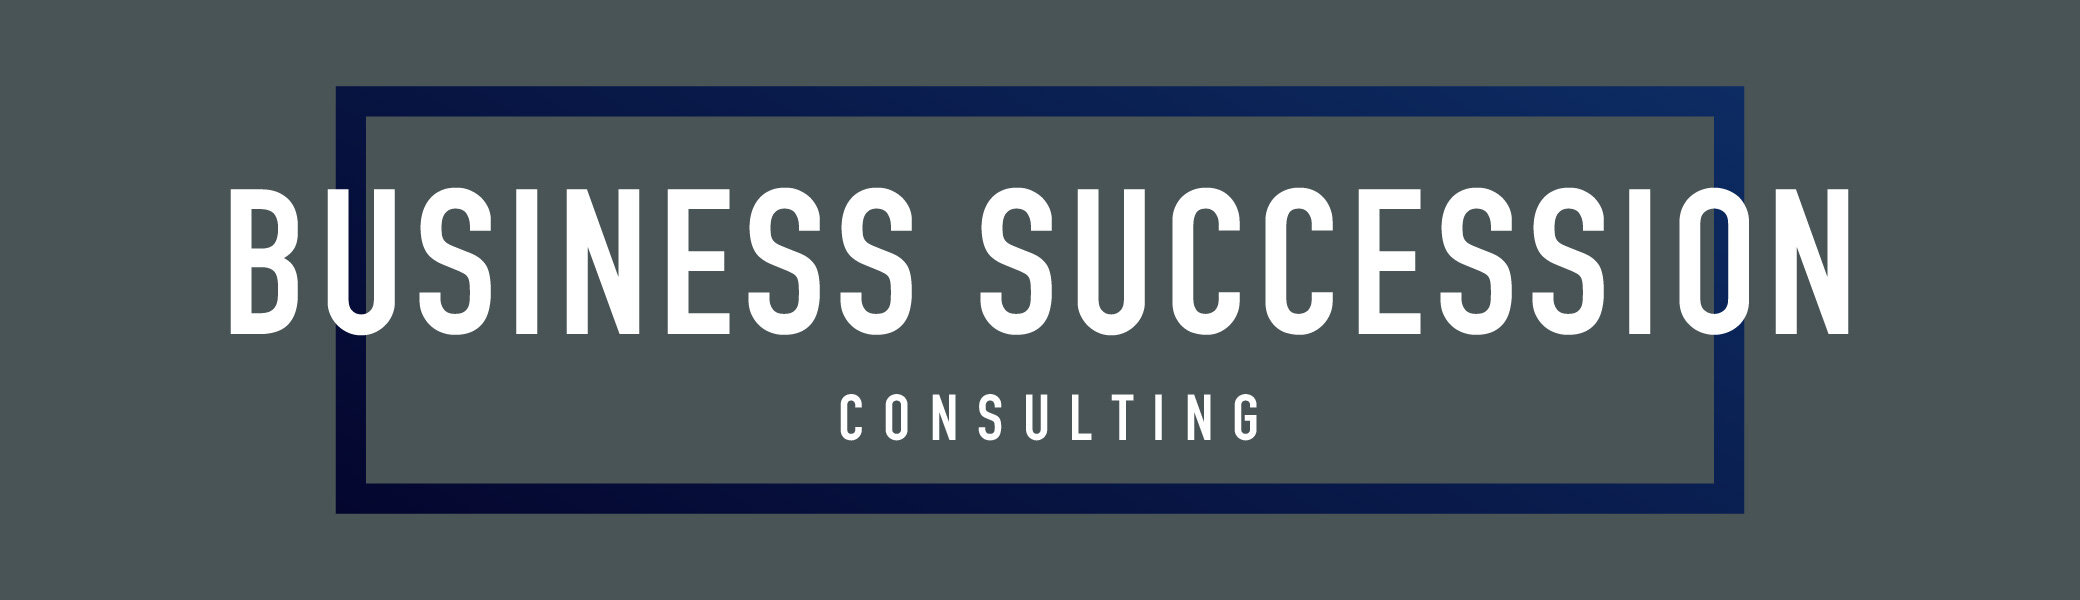 BUSINESS SUCCESSION CONSLUTING